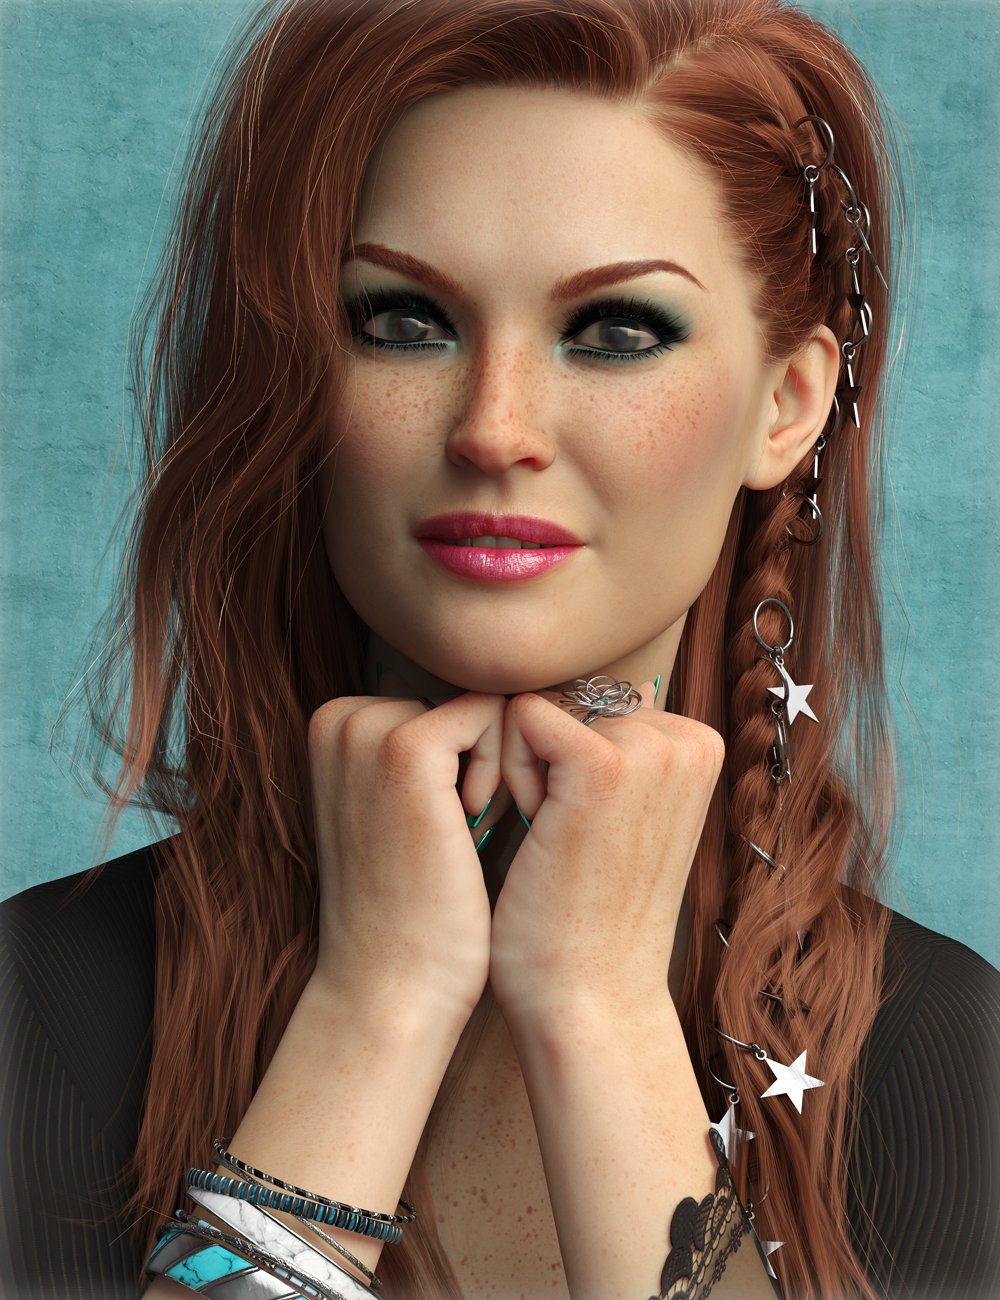 Bekka HD for Genesis 8.1 Female by: Emrys, 3D Models by Daz 3D